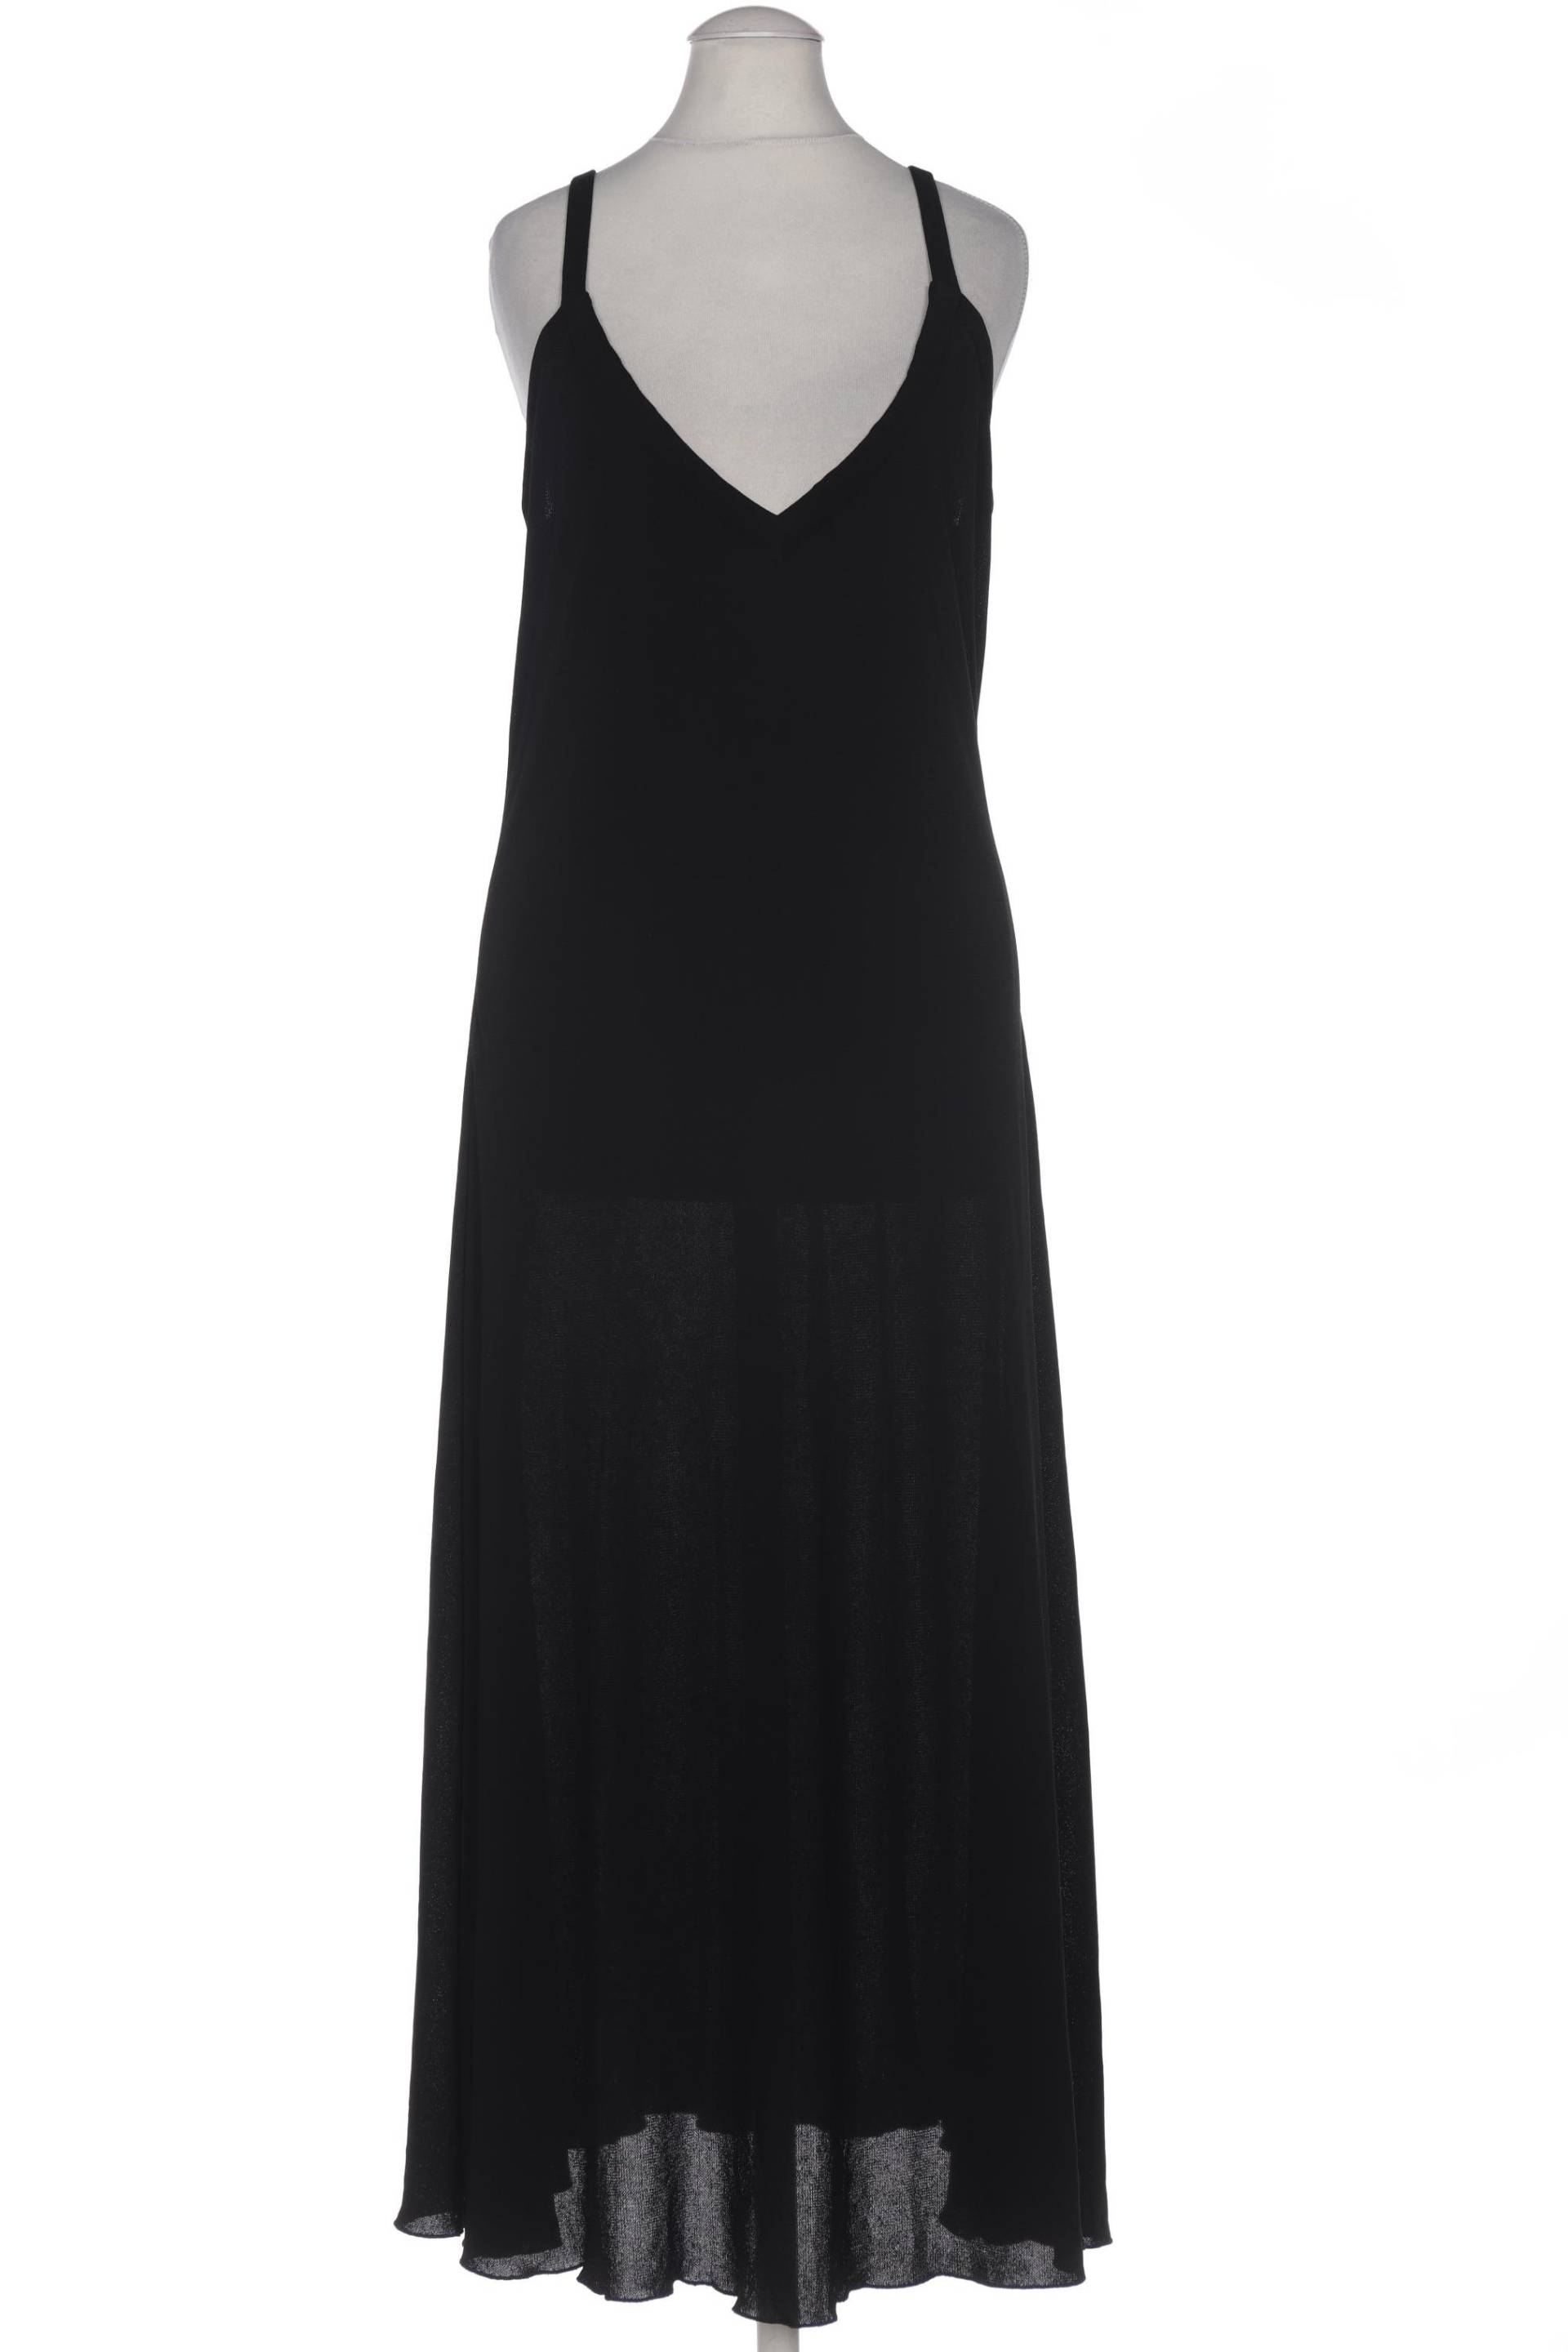 St.Emile Damen Kleid, schwarz, Gr. 34 von St.Emile